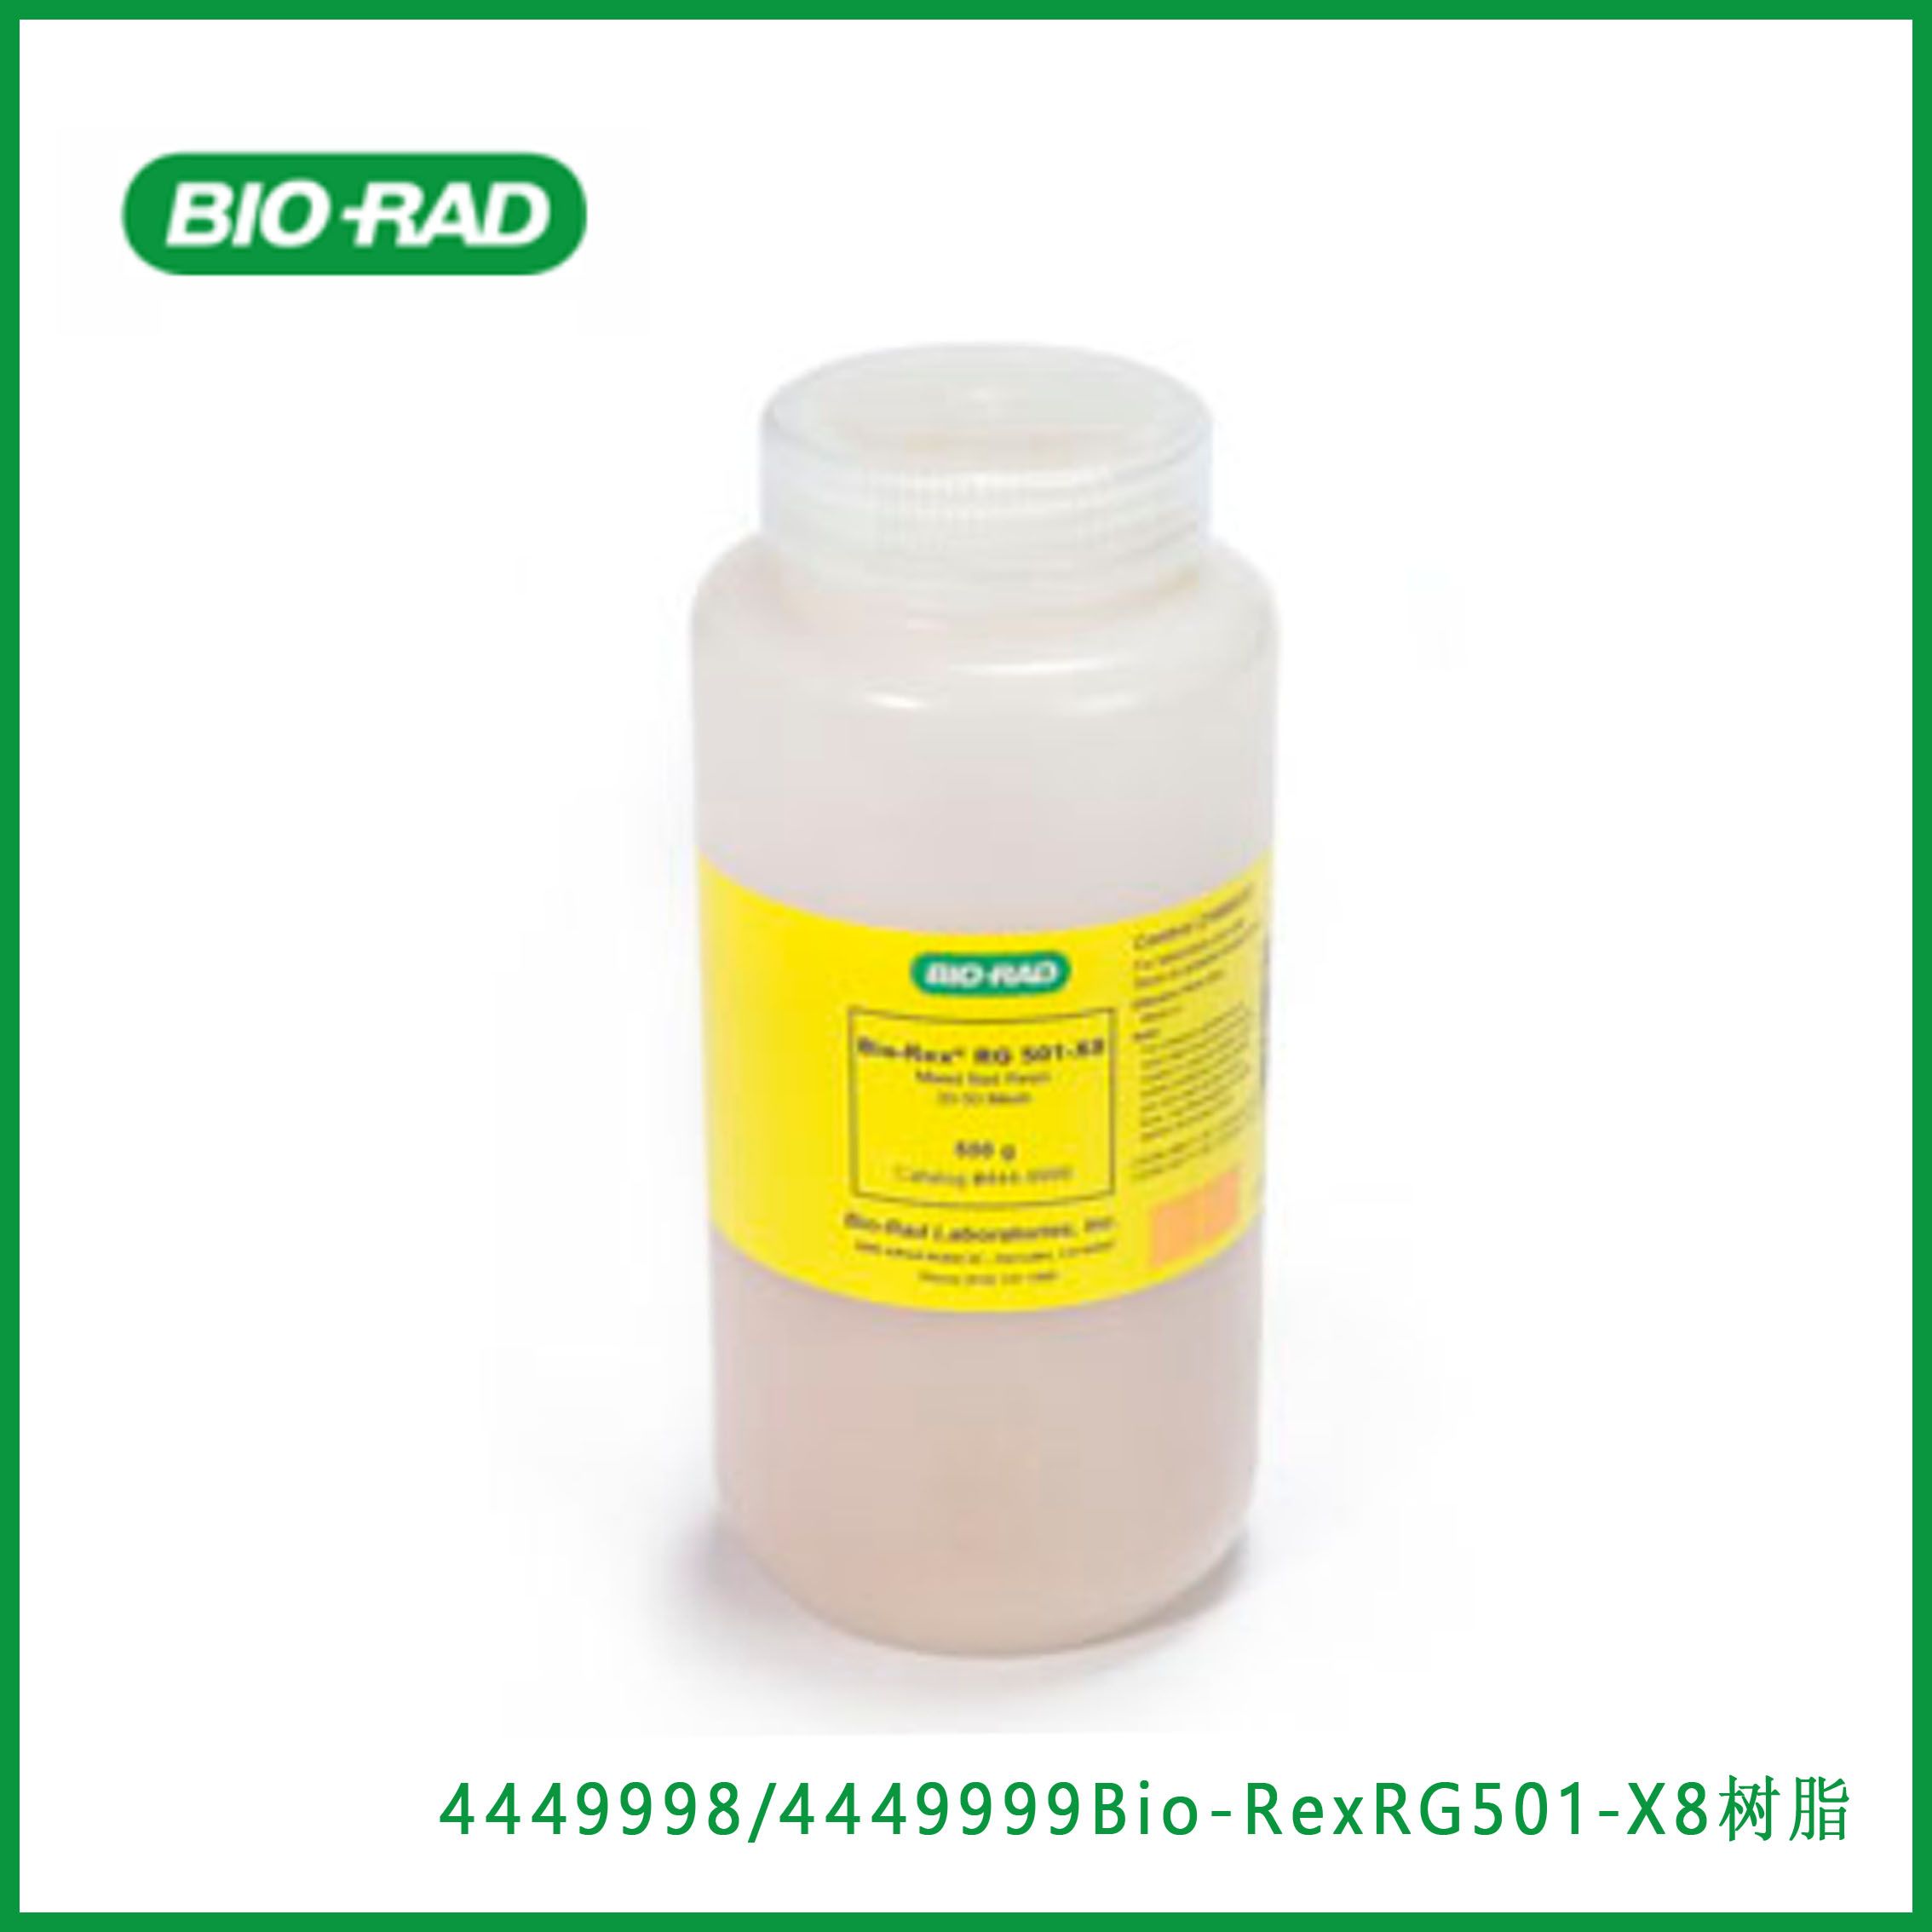 伯乐Bio-Rad 4449998/4449999 Bio-Rex RG 501-X8 Resin，Bio-Rex RG 501-X8树脂，现货